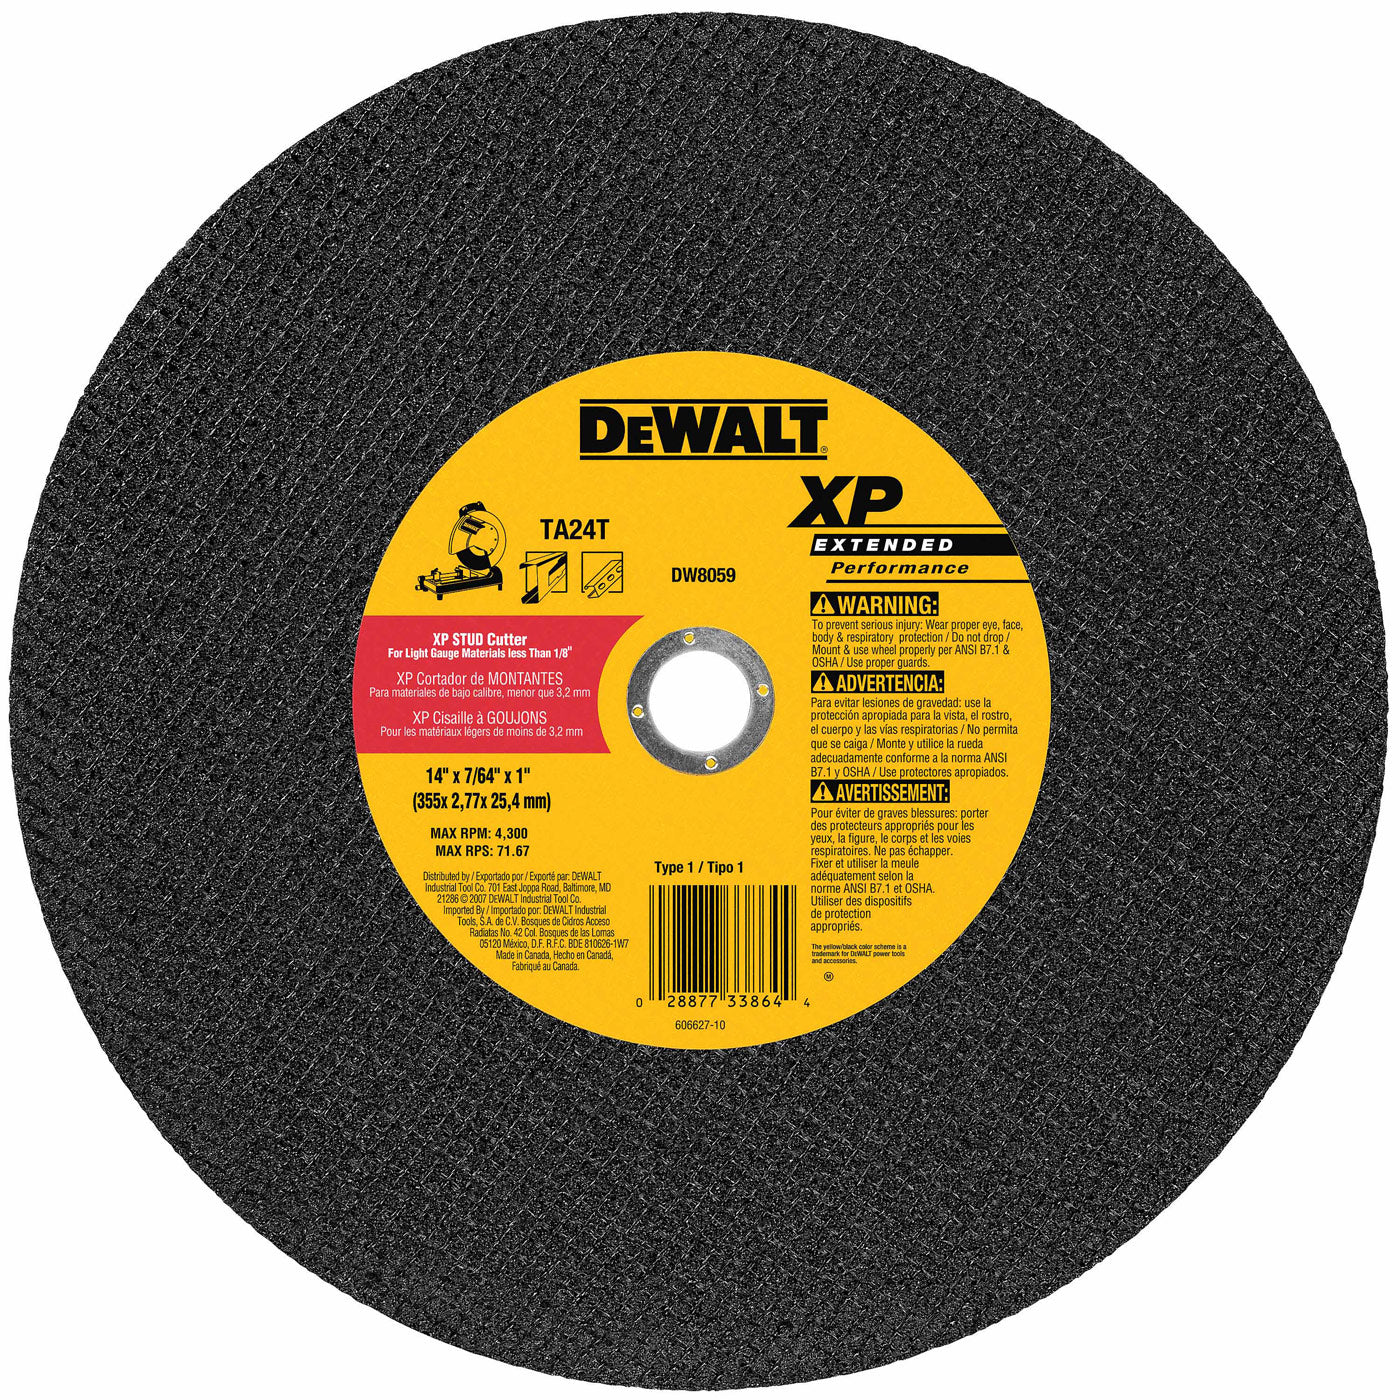 DeWalt DW8059 14" x 7/64" x 1" Extended Performance Stud Cutting High Speed Cut-Off Wheel